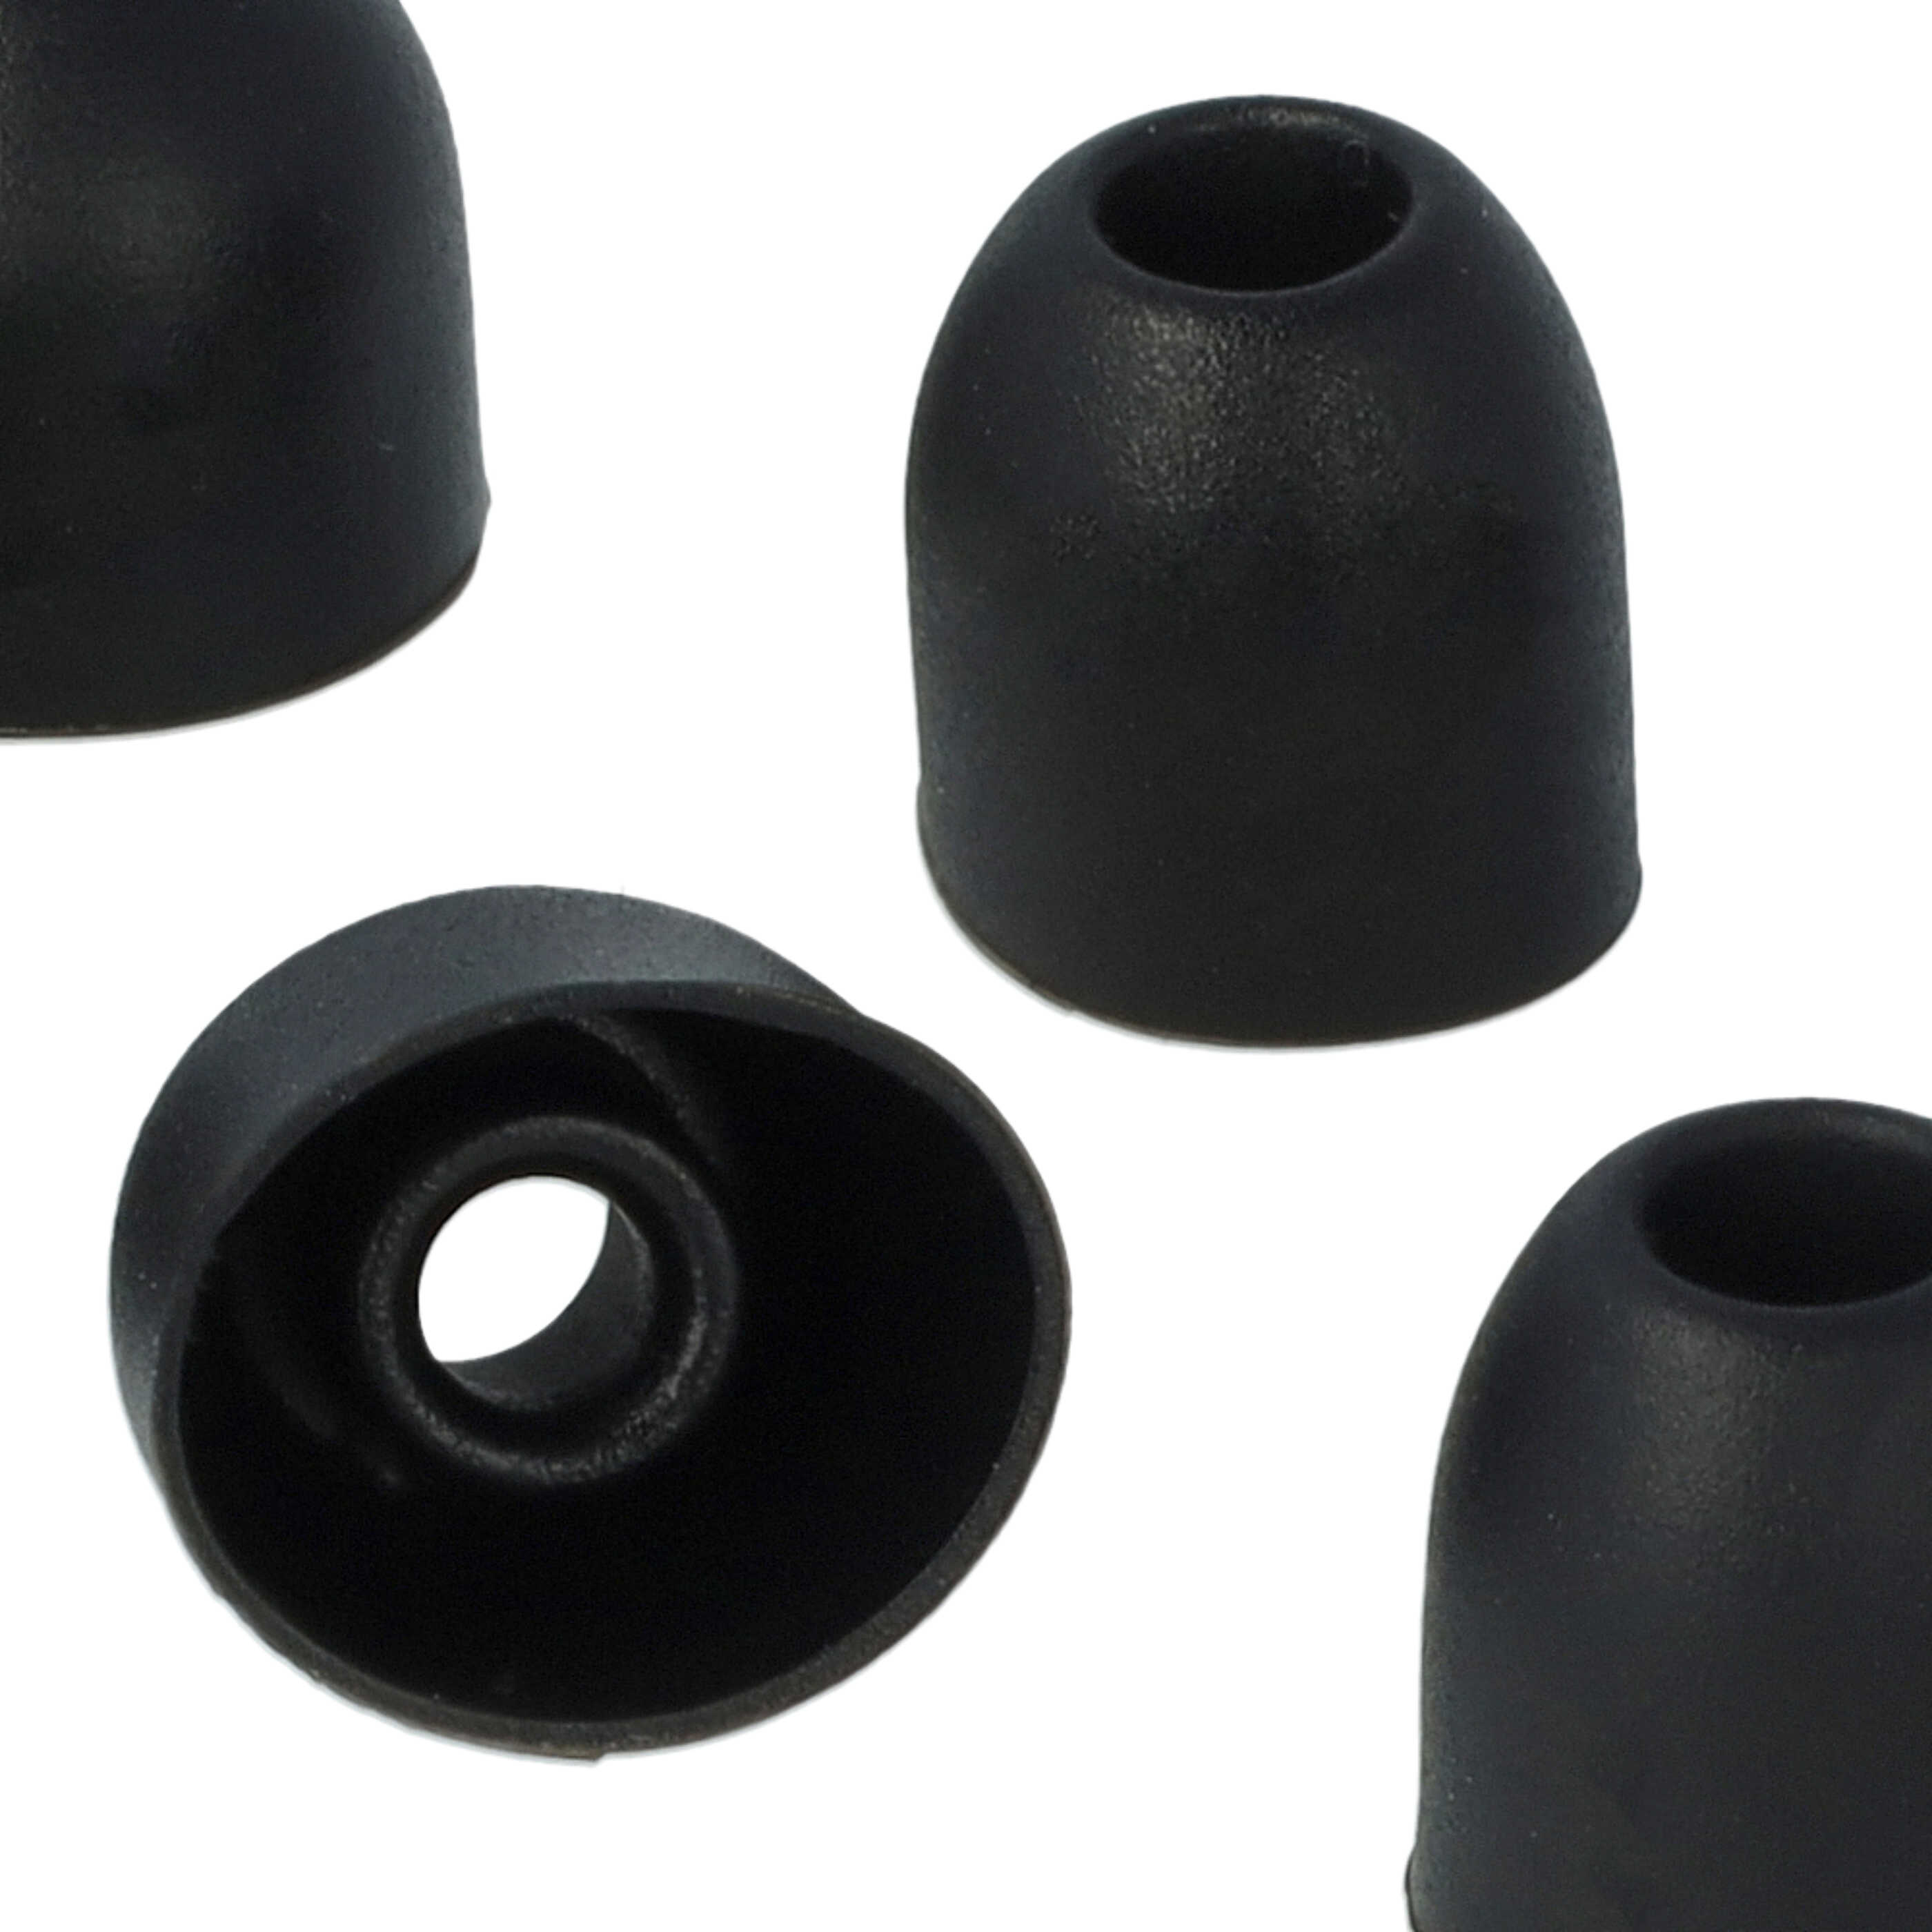 vhbw 7 Paar Ohrstöpsel passend für Sony WF-1000XM3 kabellose Kopfhörer - Schwarz / Weiß, Silikon, Weich